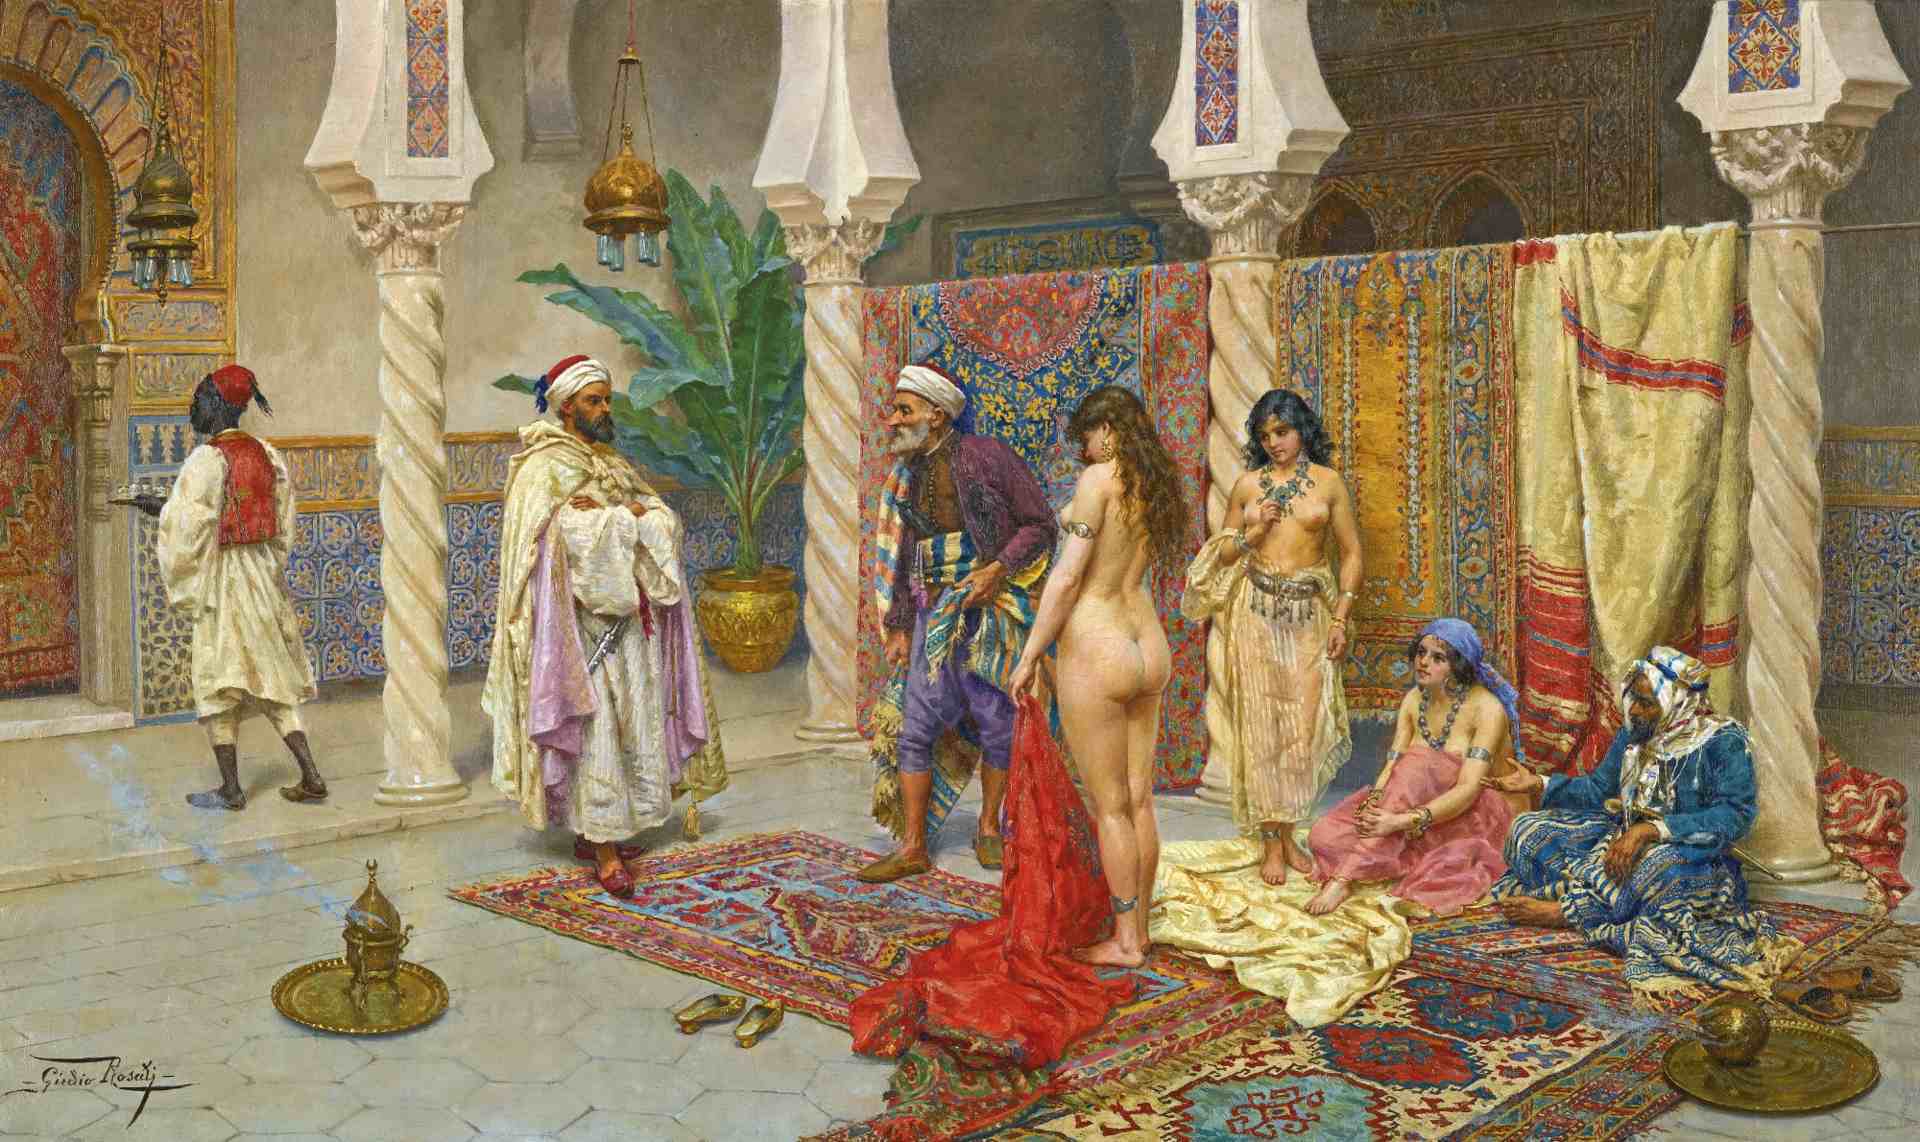 мастурбацию можно делать по исламу фото 68